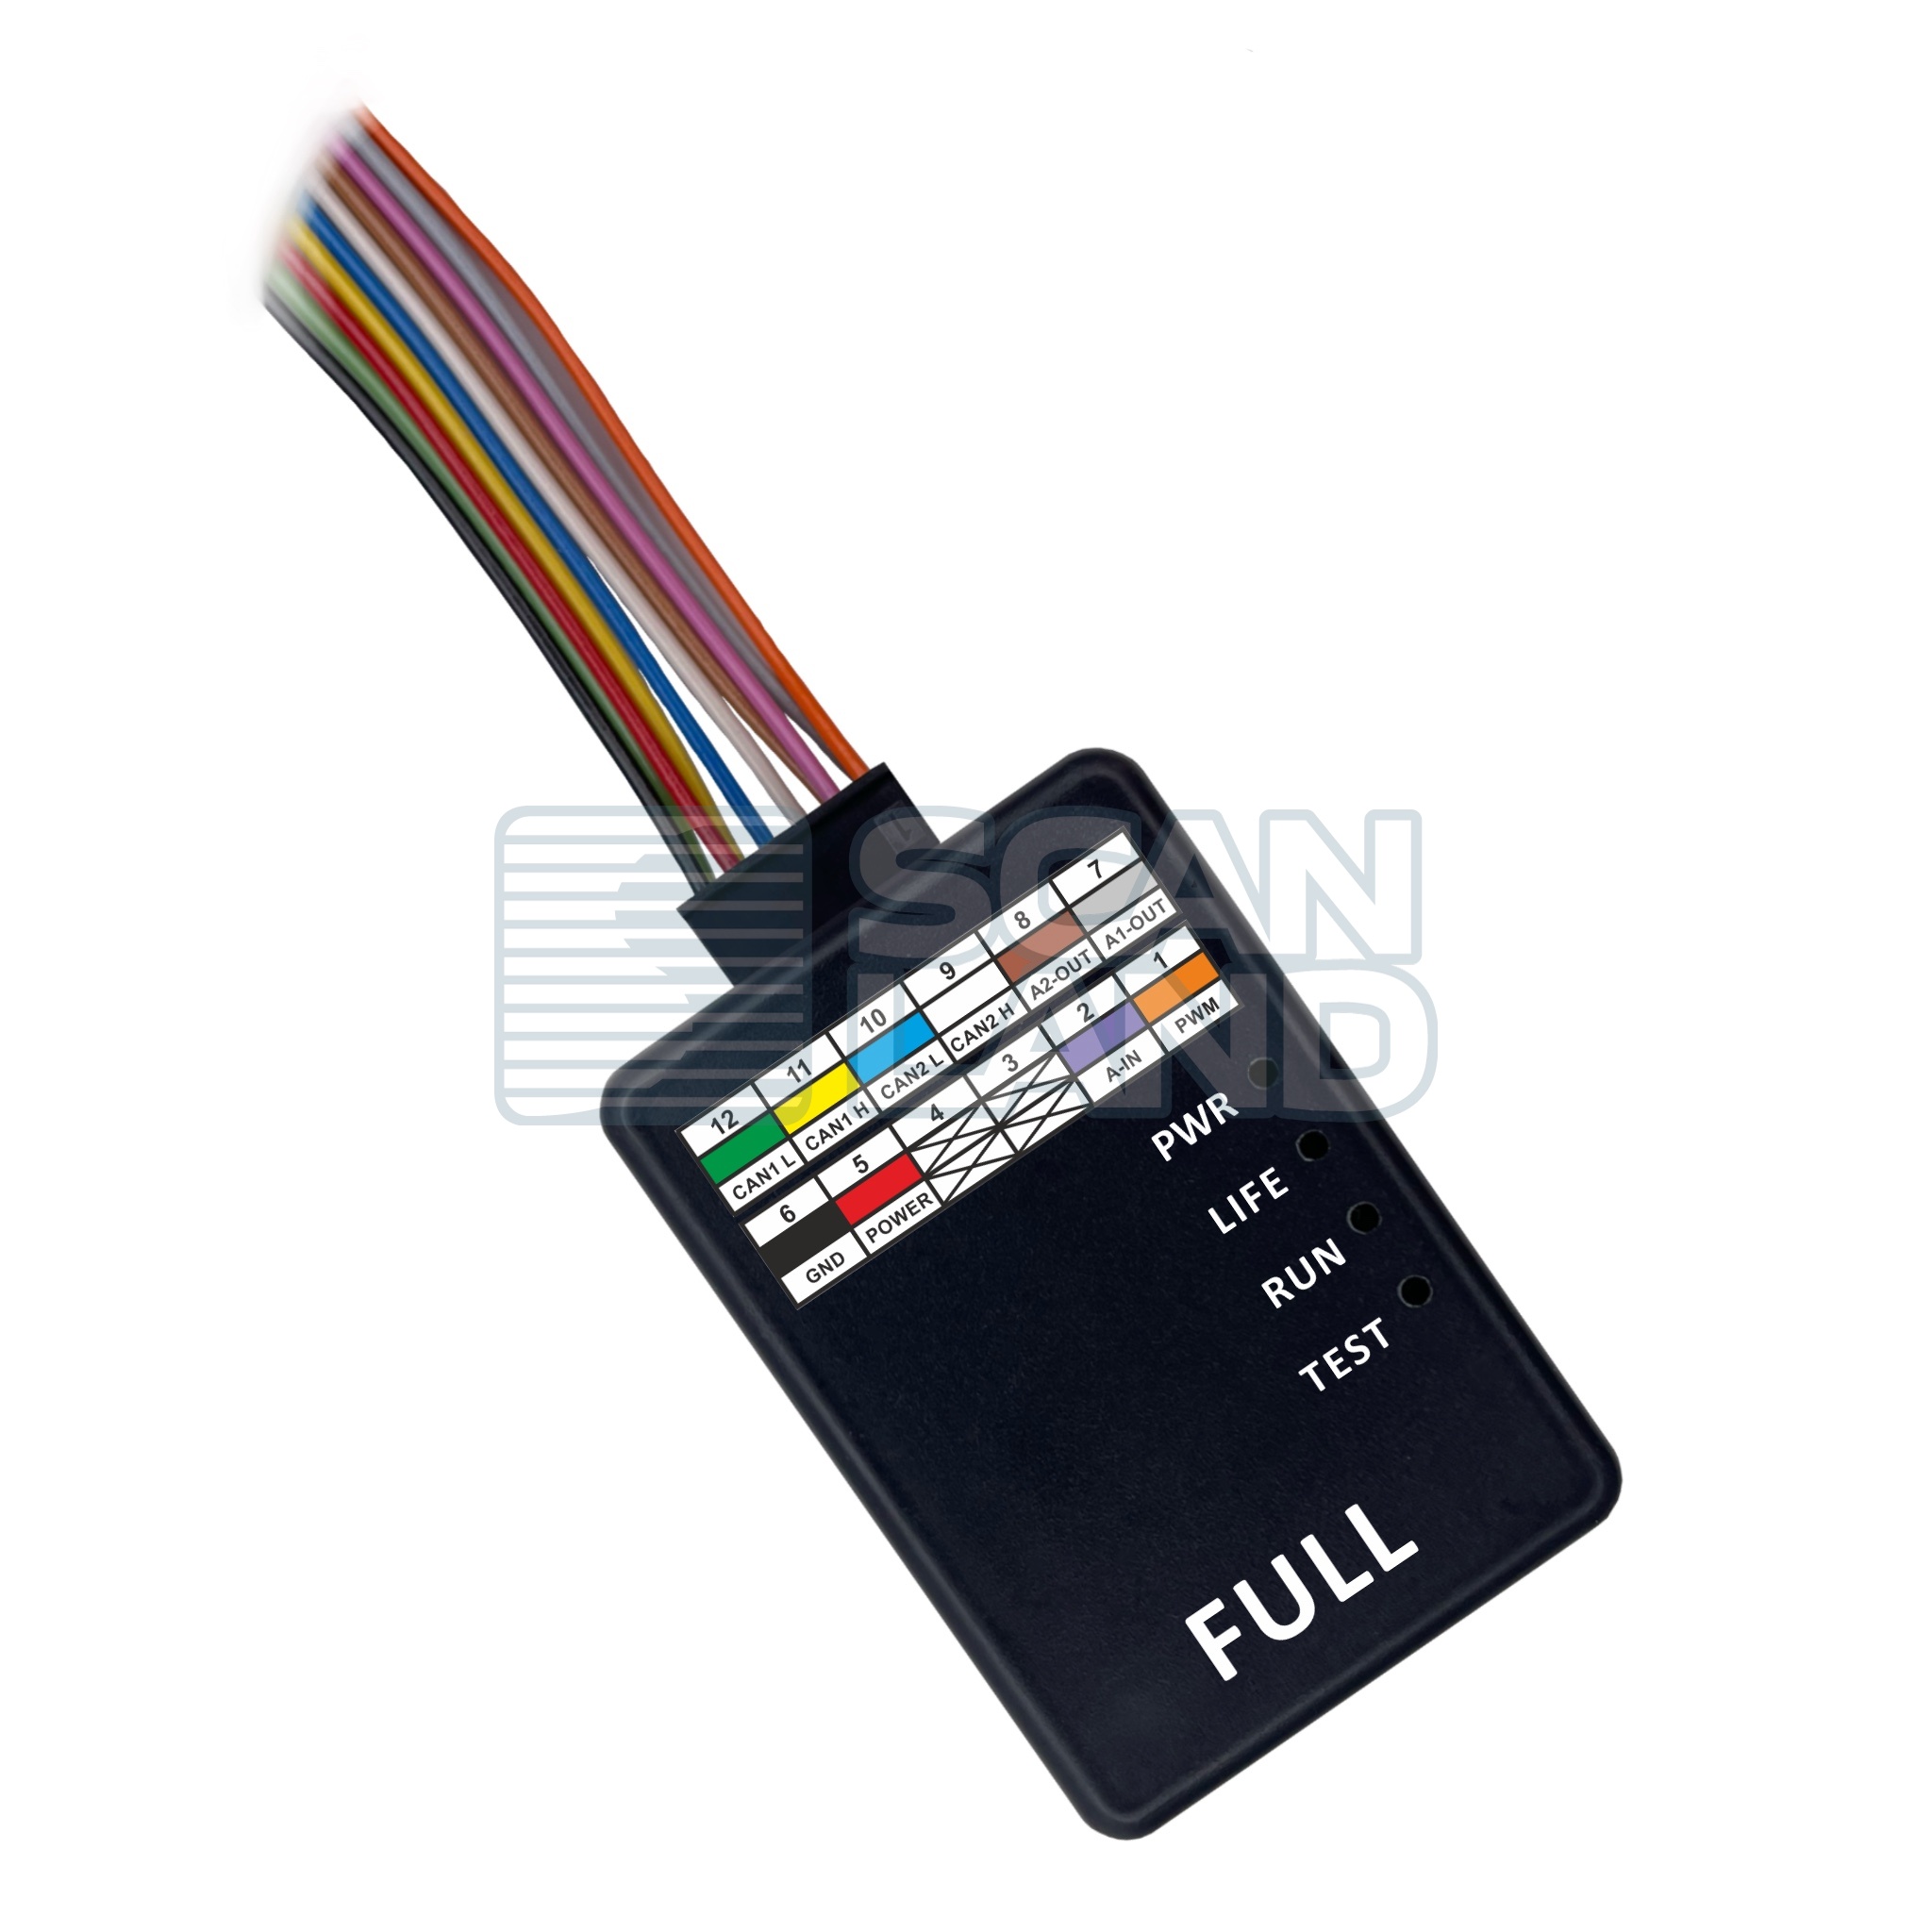 Эмулятор AdBlue EMU-MAX Full для Volvo FH/FM 4-й серии, ACM 1.0, Евро 5, версия 12.01